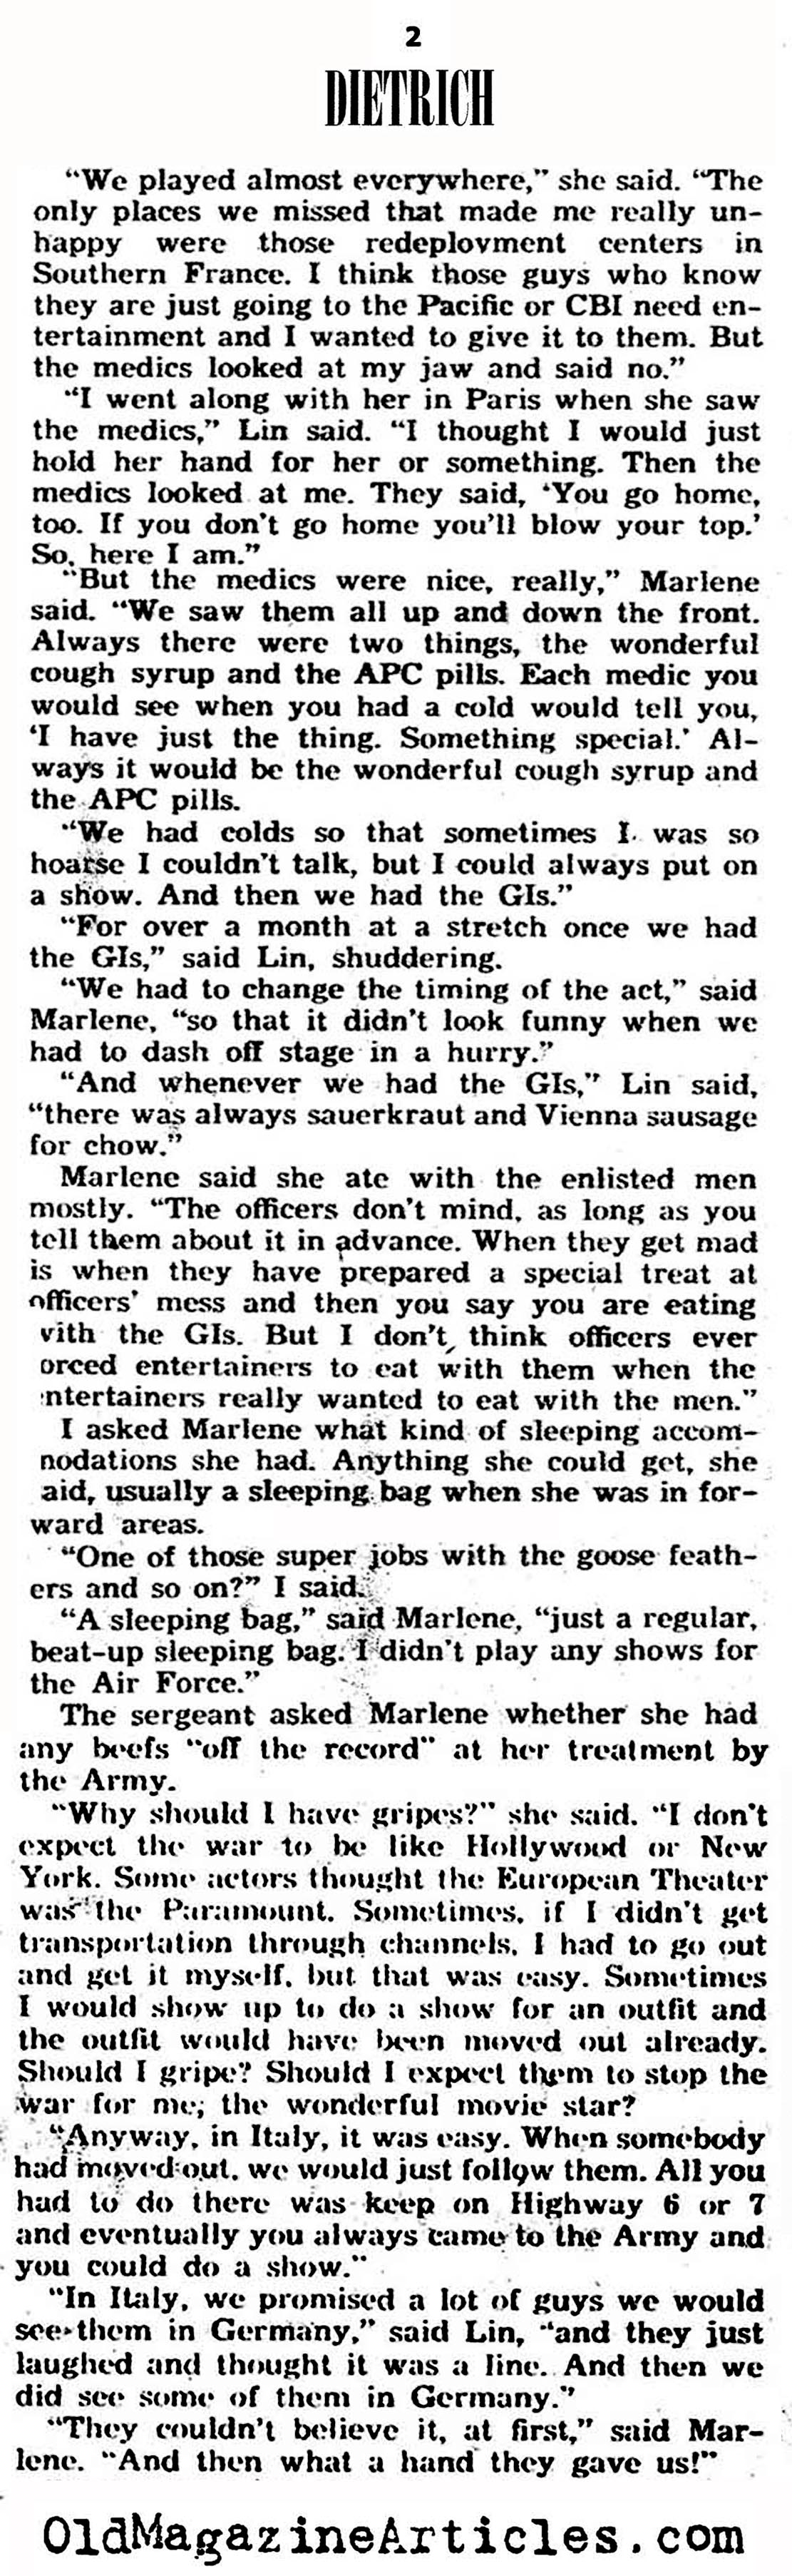 Marlene Dietrich Did Her Bit (Yank Magazine, 1945)